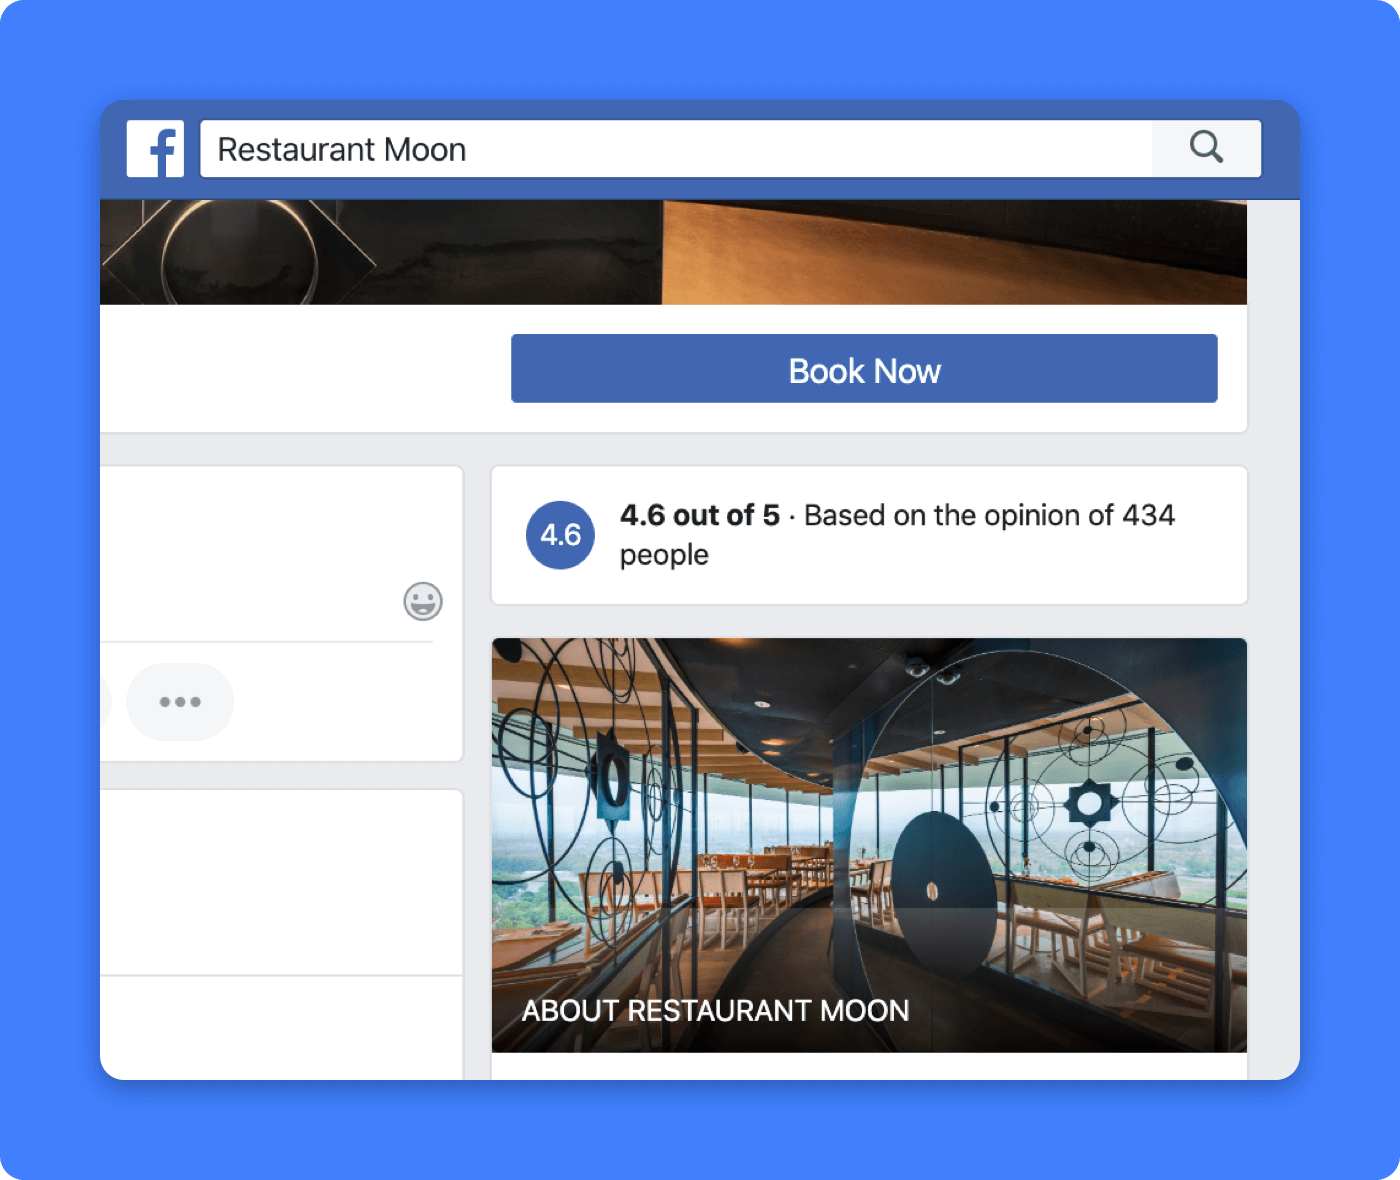 Verfügt Ihr Restaurant über eine Unternehmensseite auf Facebook? Fügen Sie in 5 Schritten eine Reservieren-Taste hinzu.